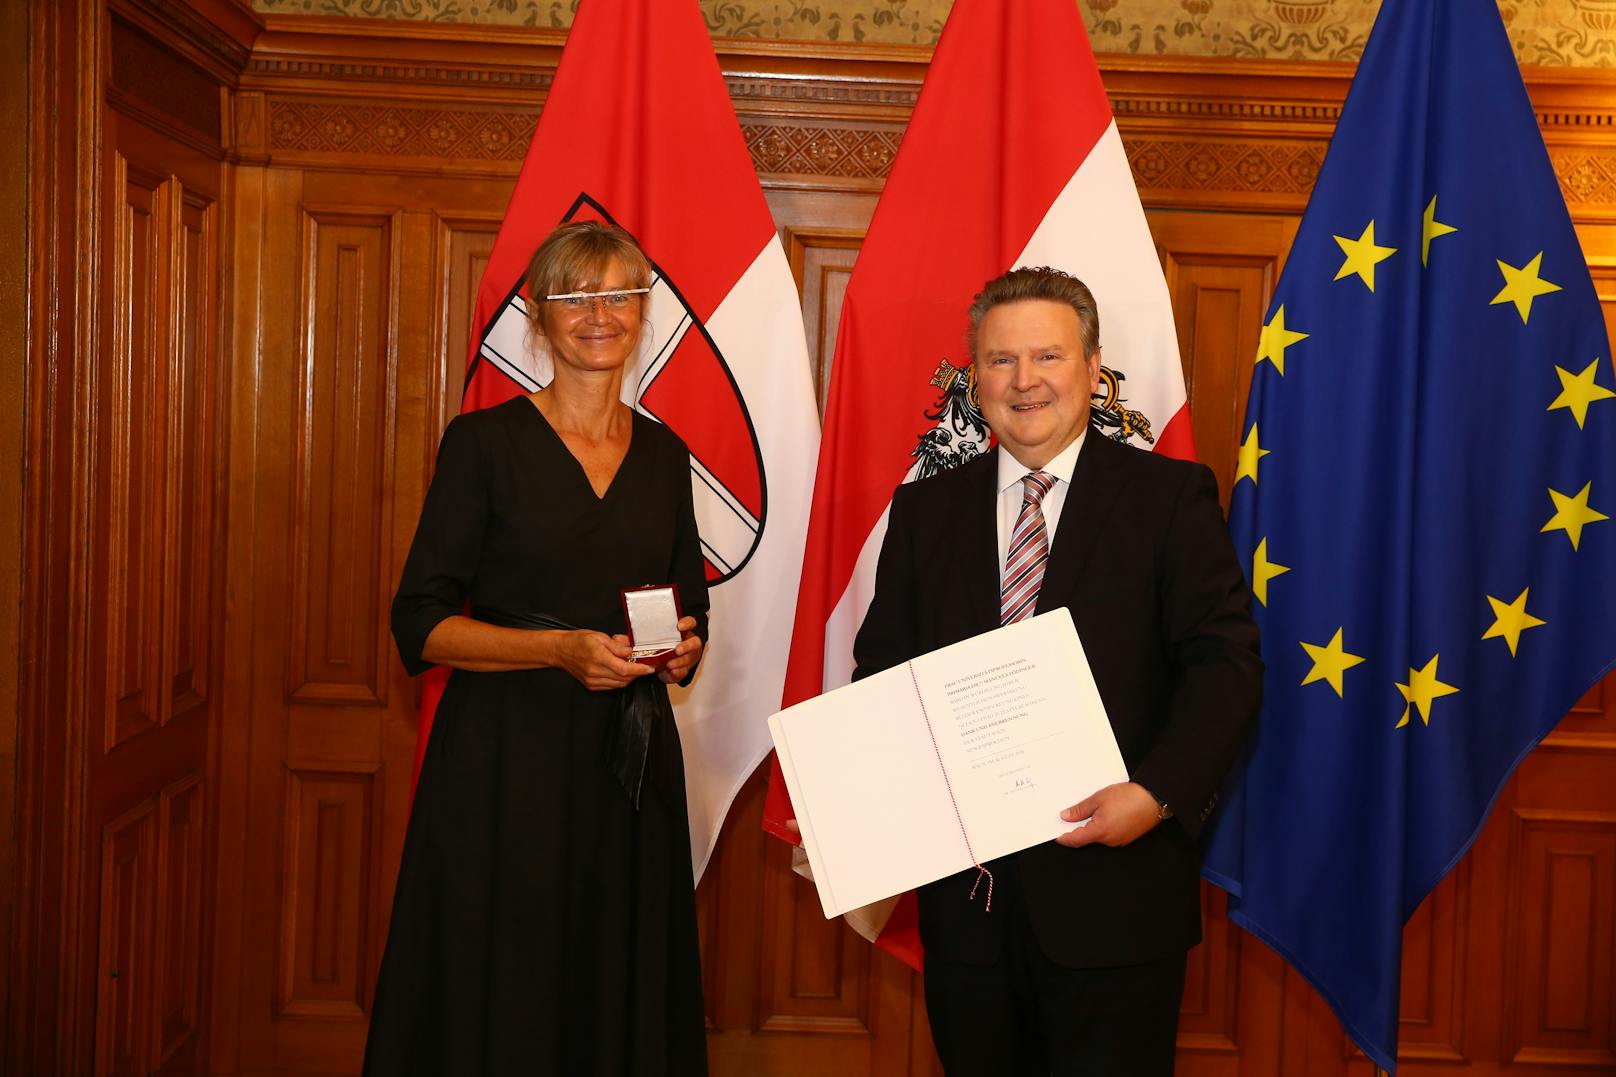 Bürgermeister Michael Ludwig ehrte Manuela Födinger, "Erfinderin" des Gurgeltests